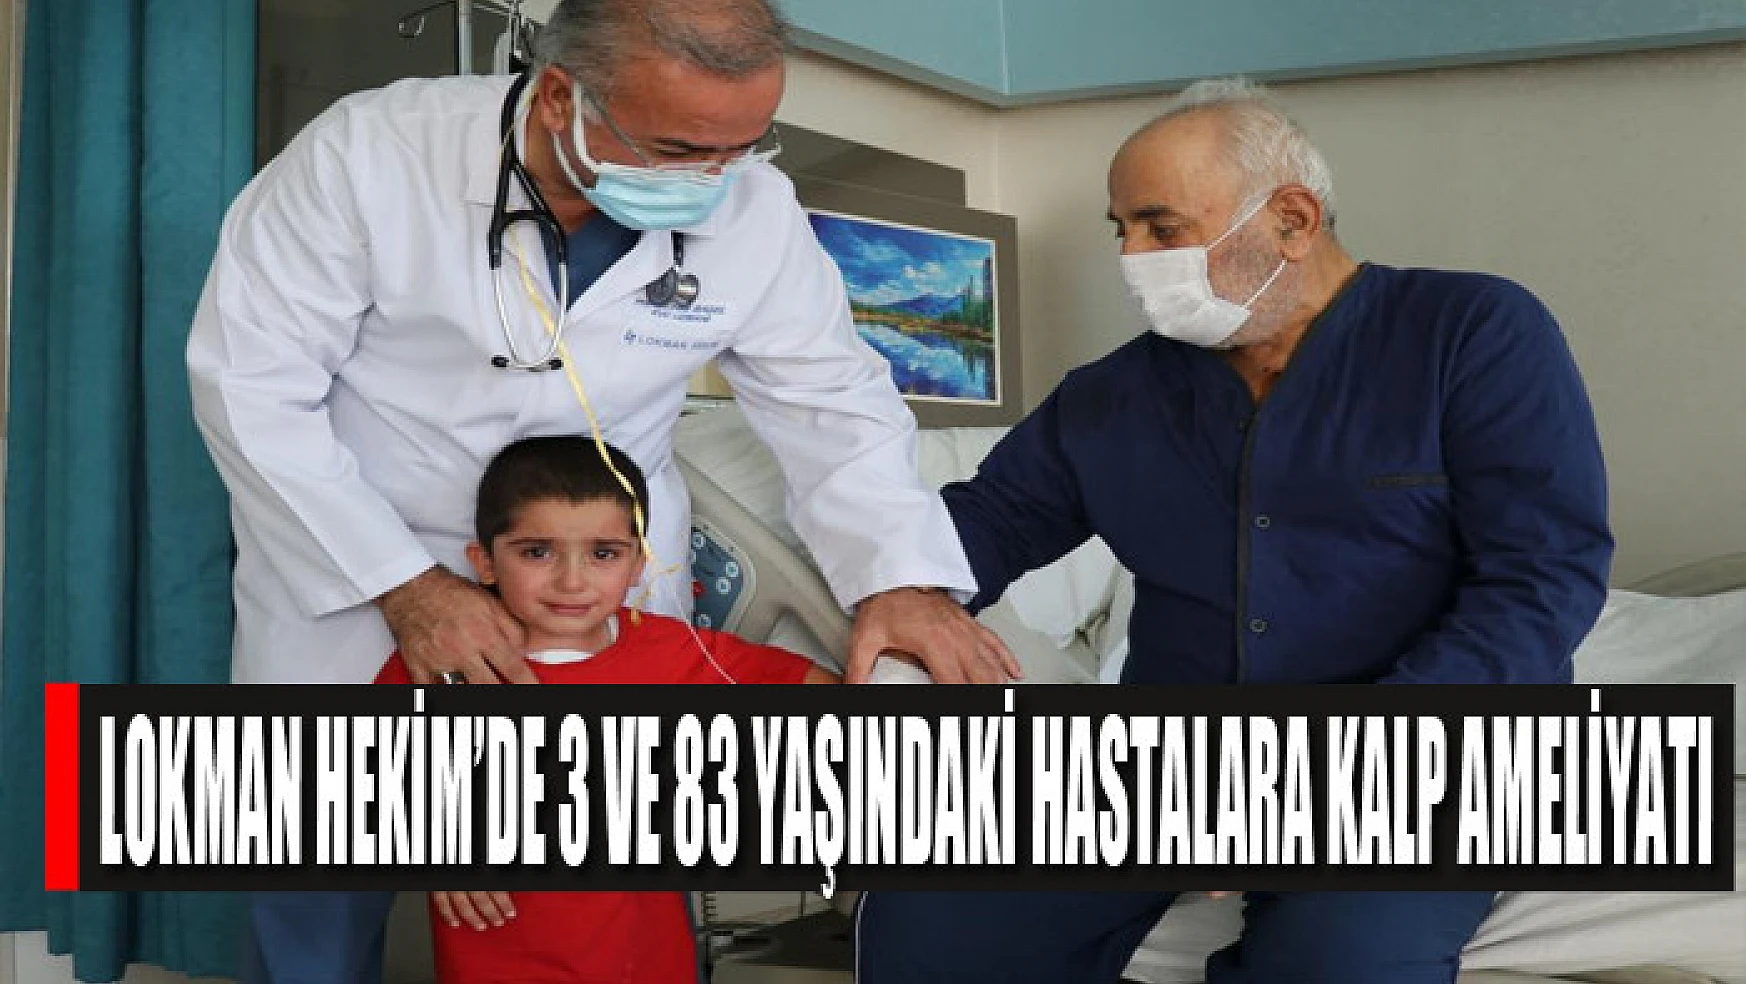 Lokman Hekim'de 3 ve 83 yaşındaki hastalara kalp ameliyatı